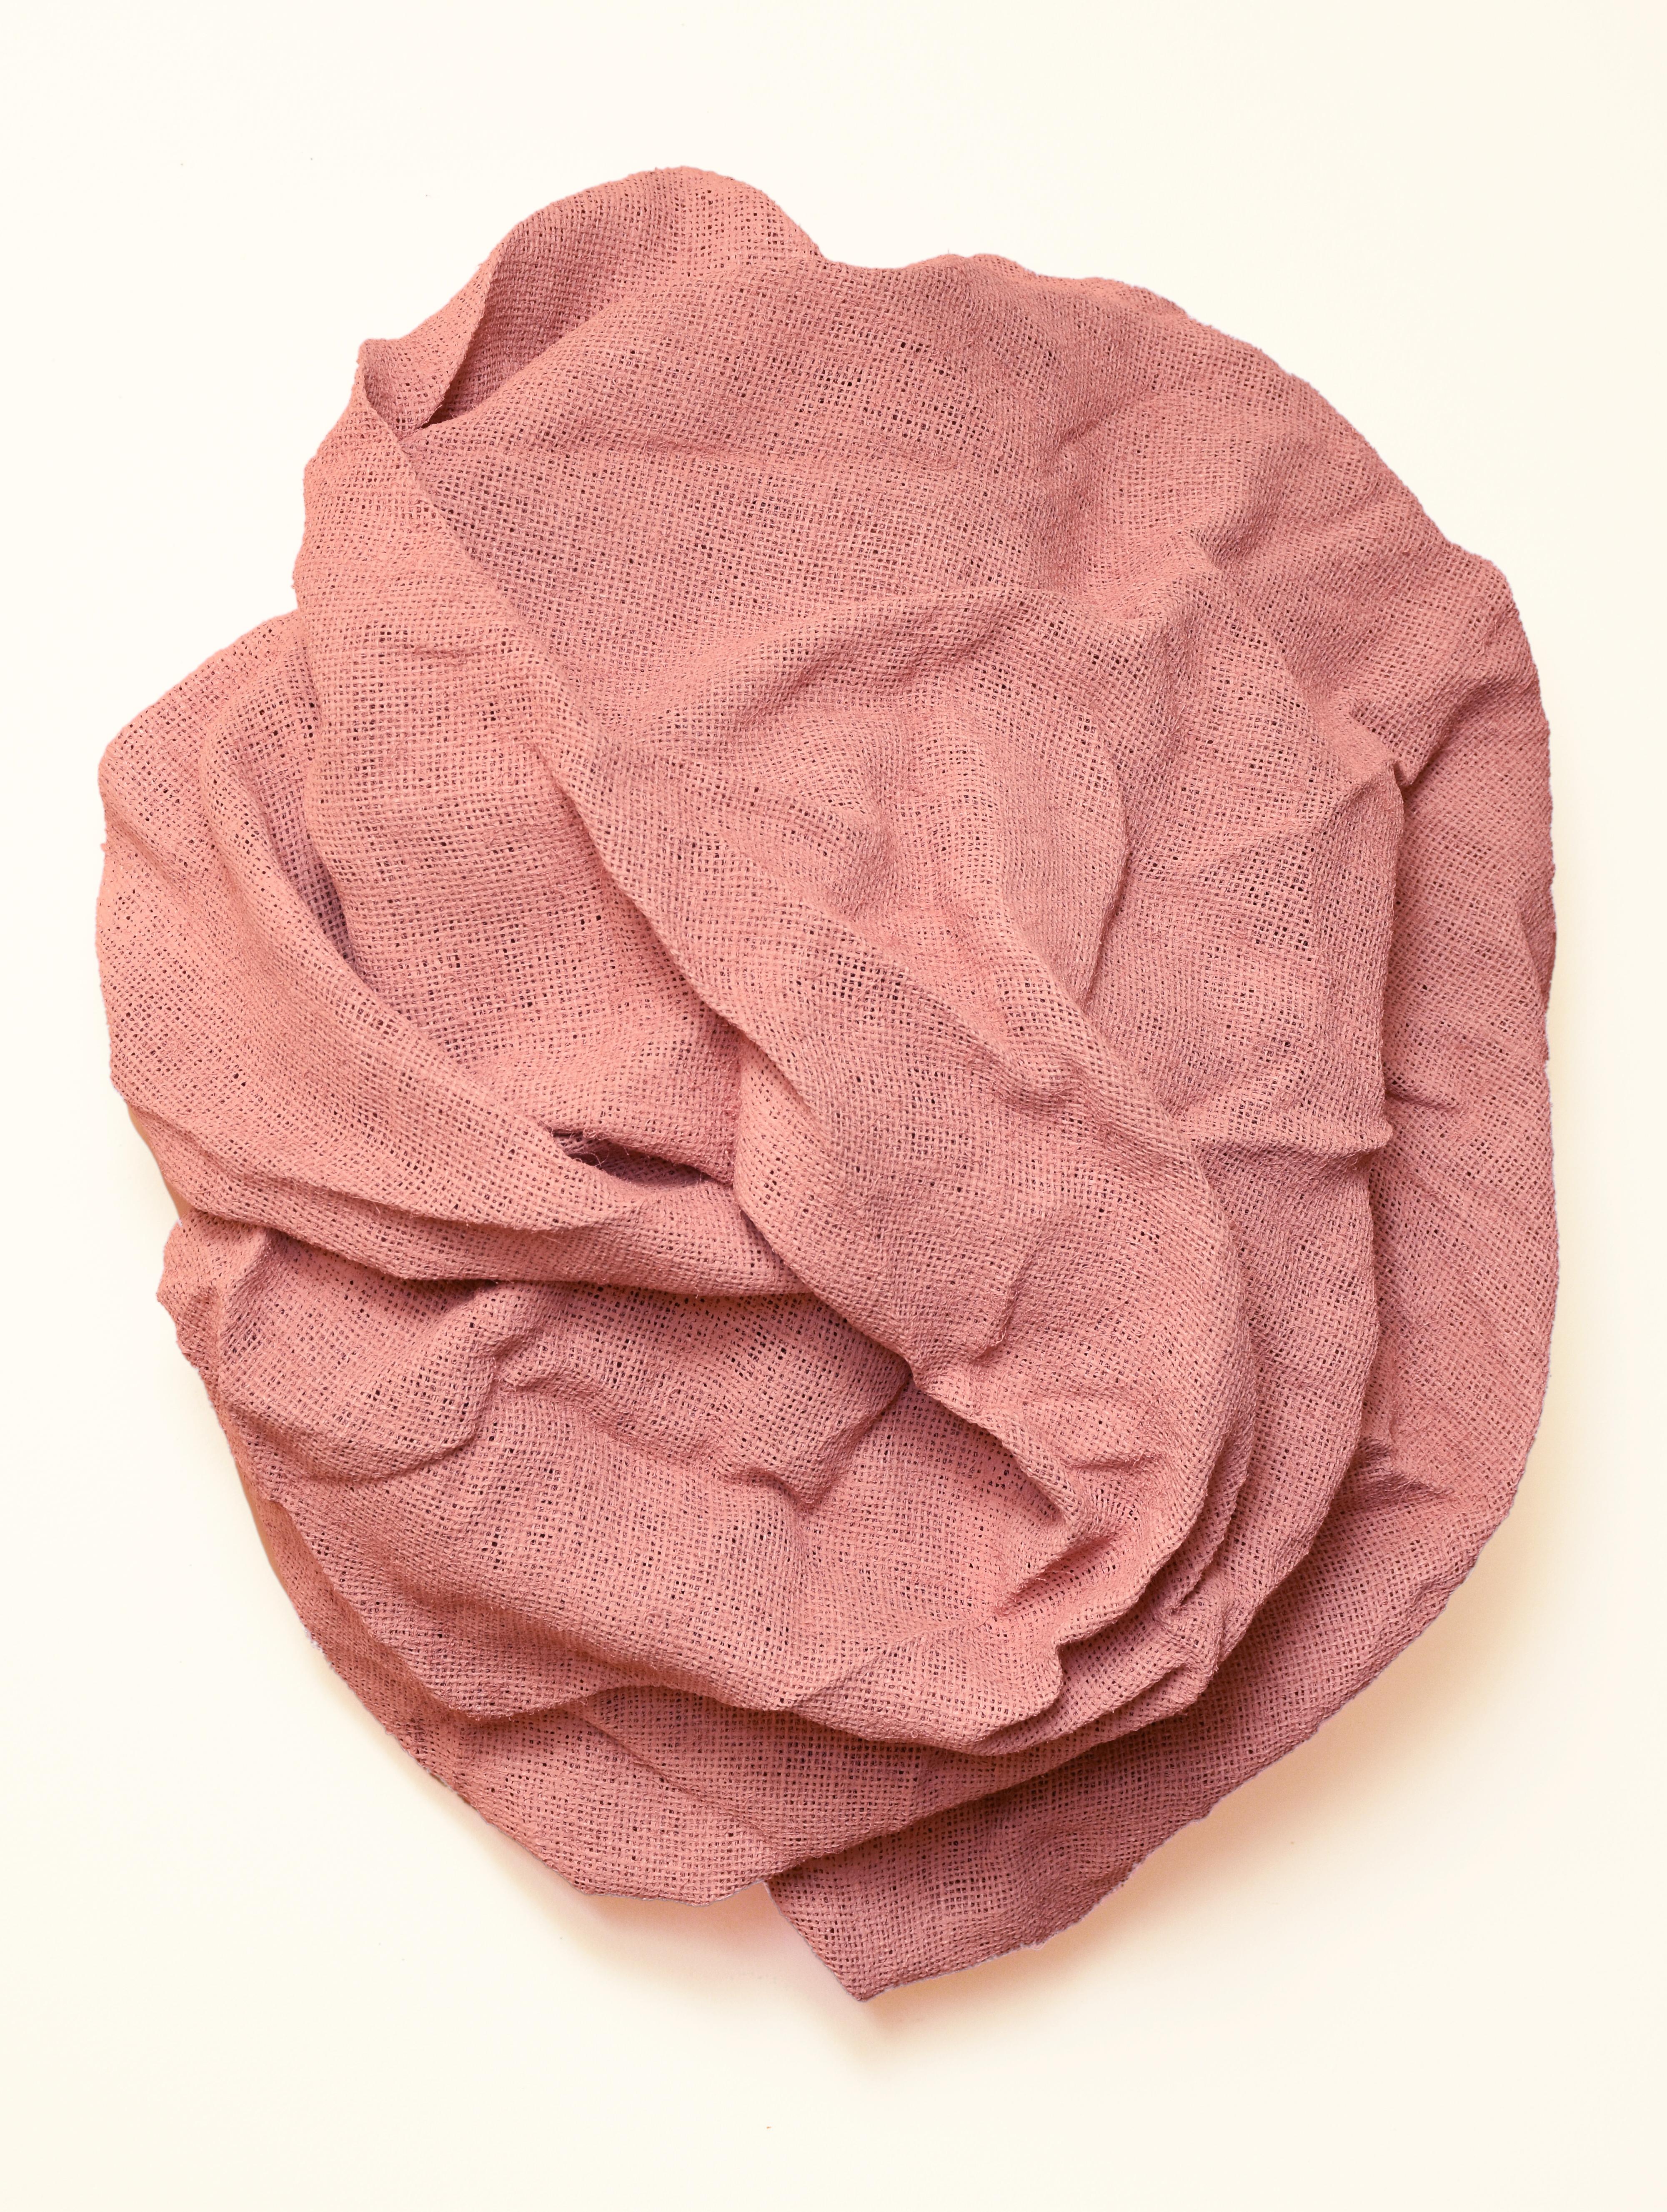 Ballet Pink Folds (hard fabric, textile wall sculpture, contemporary art design)